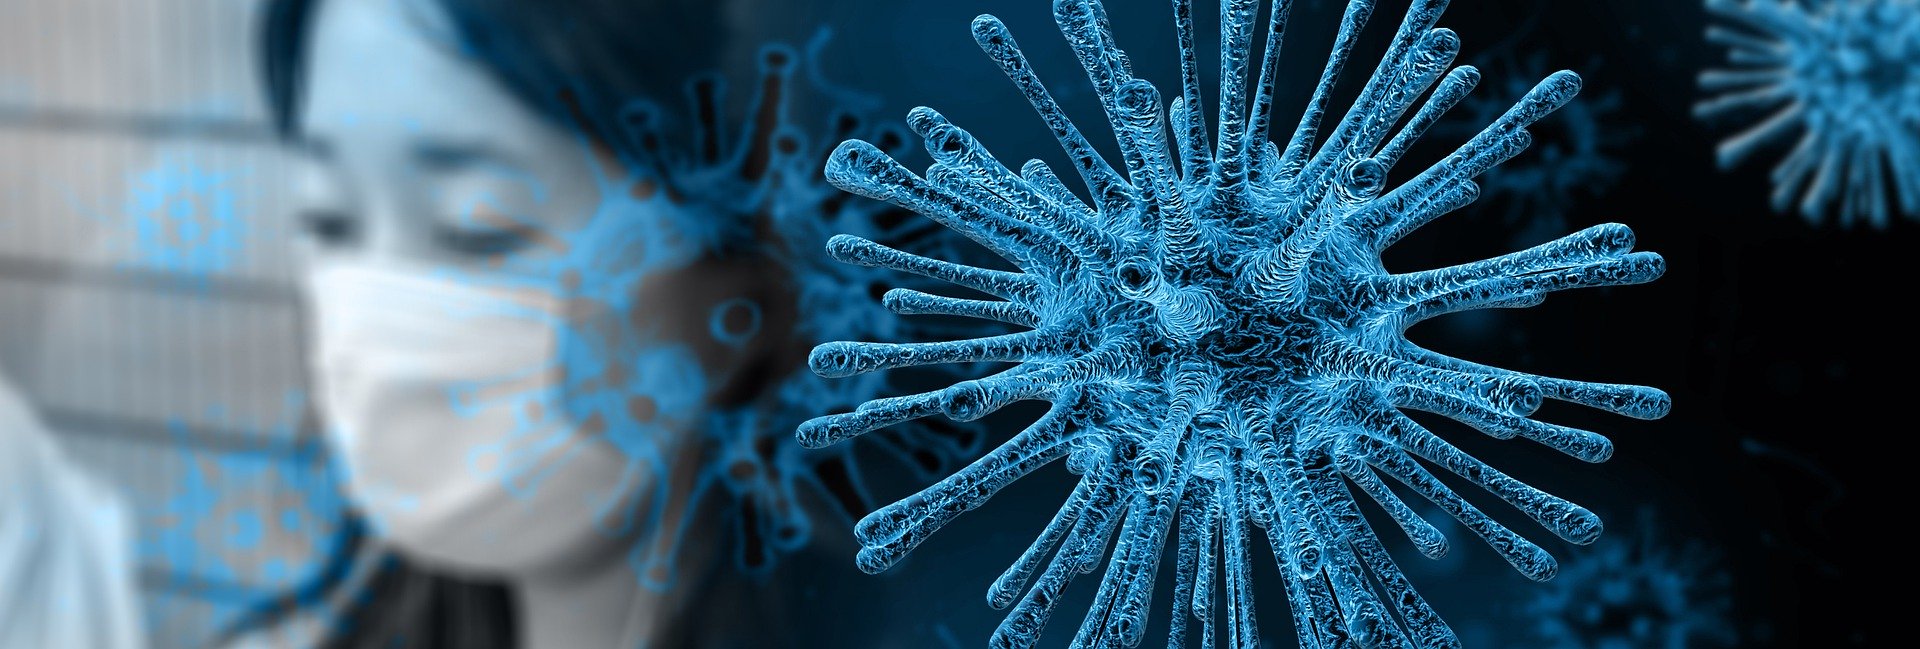 Coronavirus: Daily News and Updates June 2020